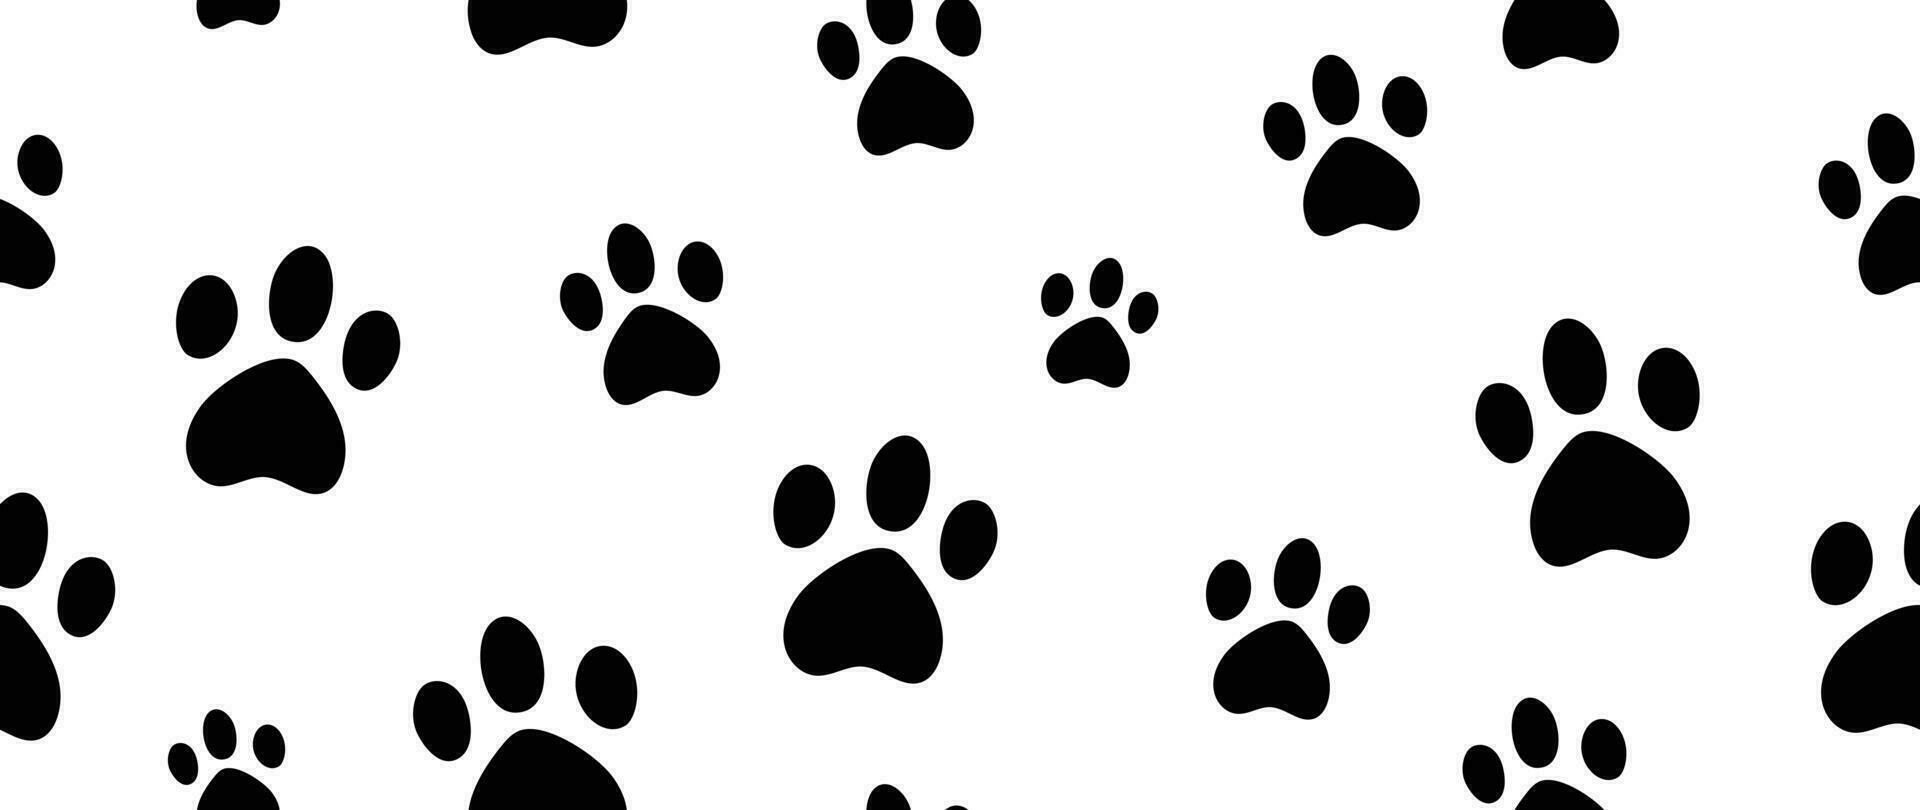 Hund Pfote Fußabdrücke Hintergrund Vektor. Hand gezeichnet Tier, Haustier, Katze Pfote Silhouette Muster, Kätzchen, Hündchen gehen. Schritte Illustration Design zum Stoff, dekorativ, Aufkleber, Hintergrund, Kinder vektor